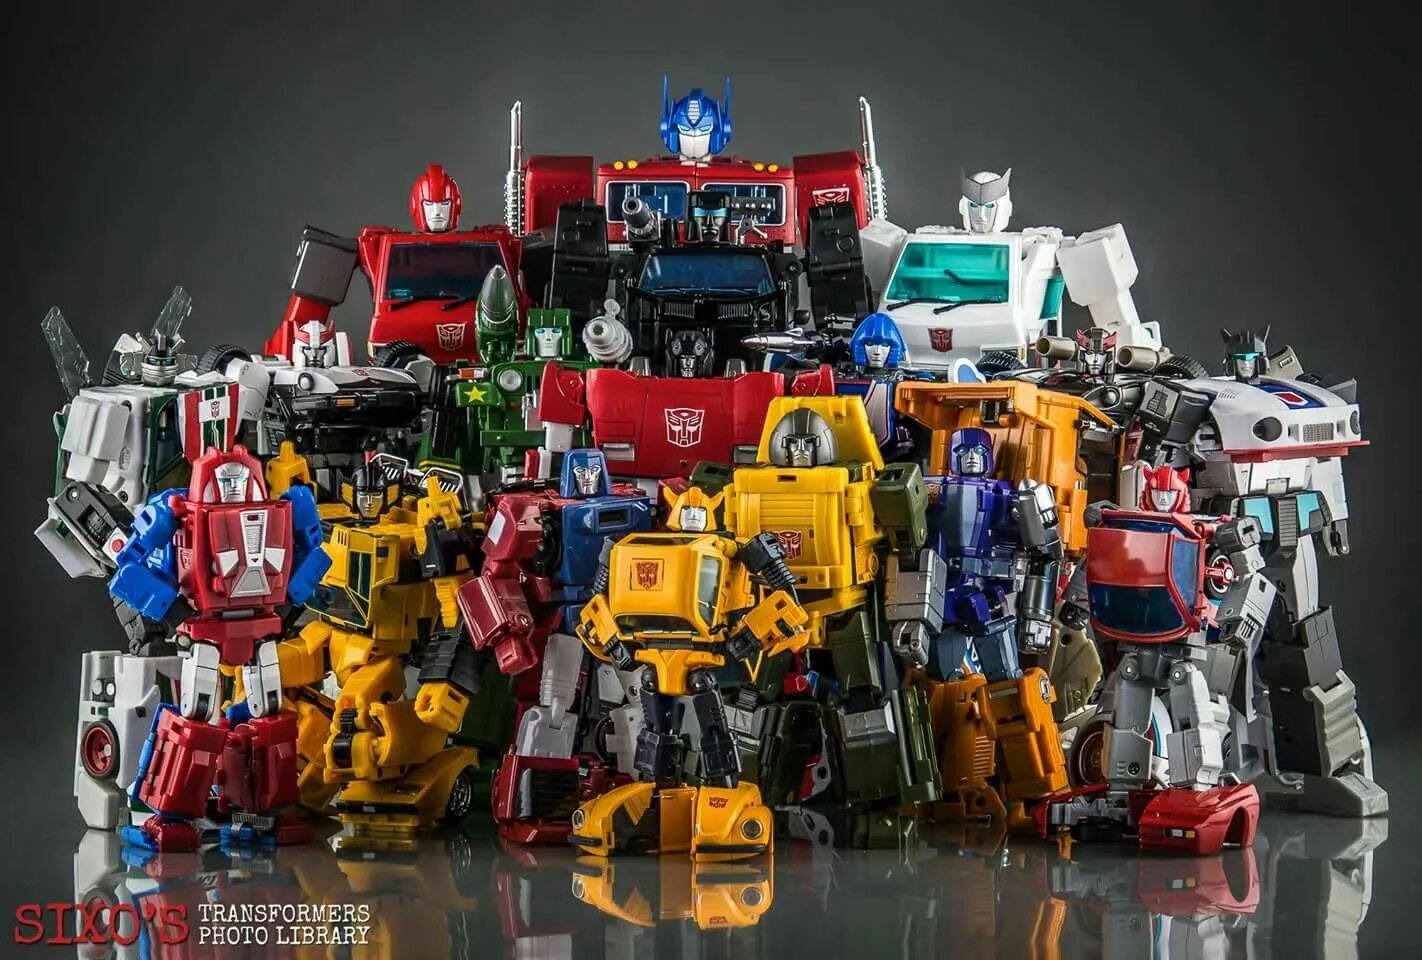 Какие автоботы. Трансформеры первое поколение Автоботы. Трансформеры первое поколение Оптимус Прайм. Трансформеры первое поколение Автоботы игрушки. Transformers g1 Optimus Prime Toy.